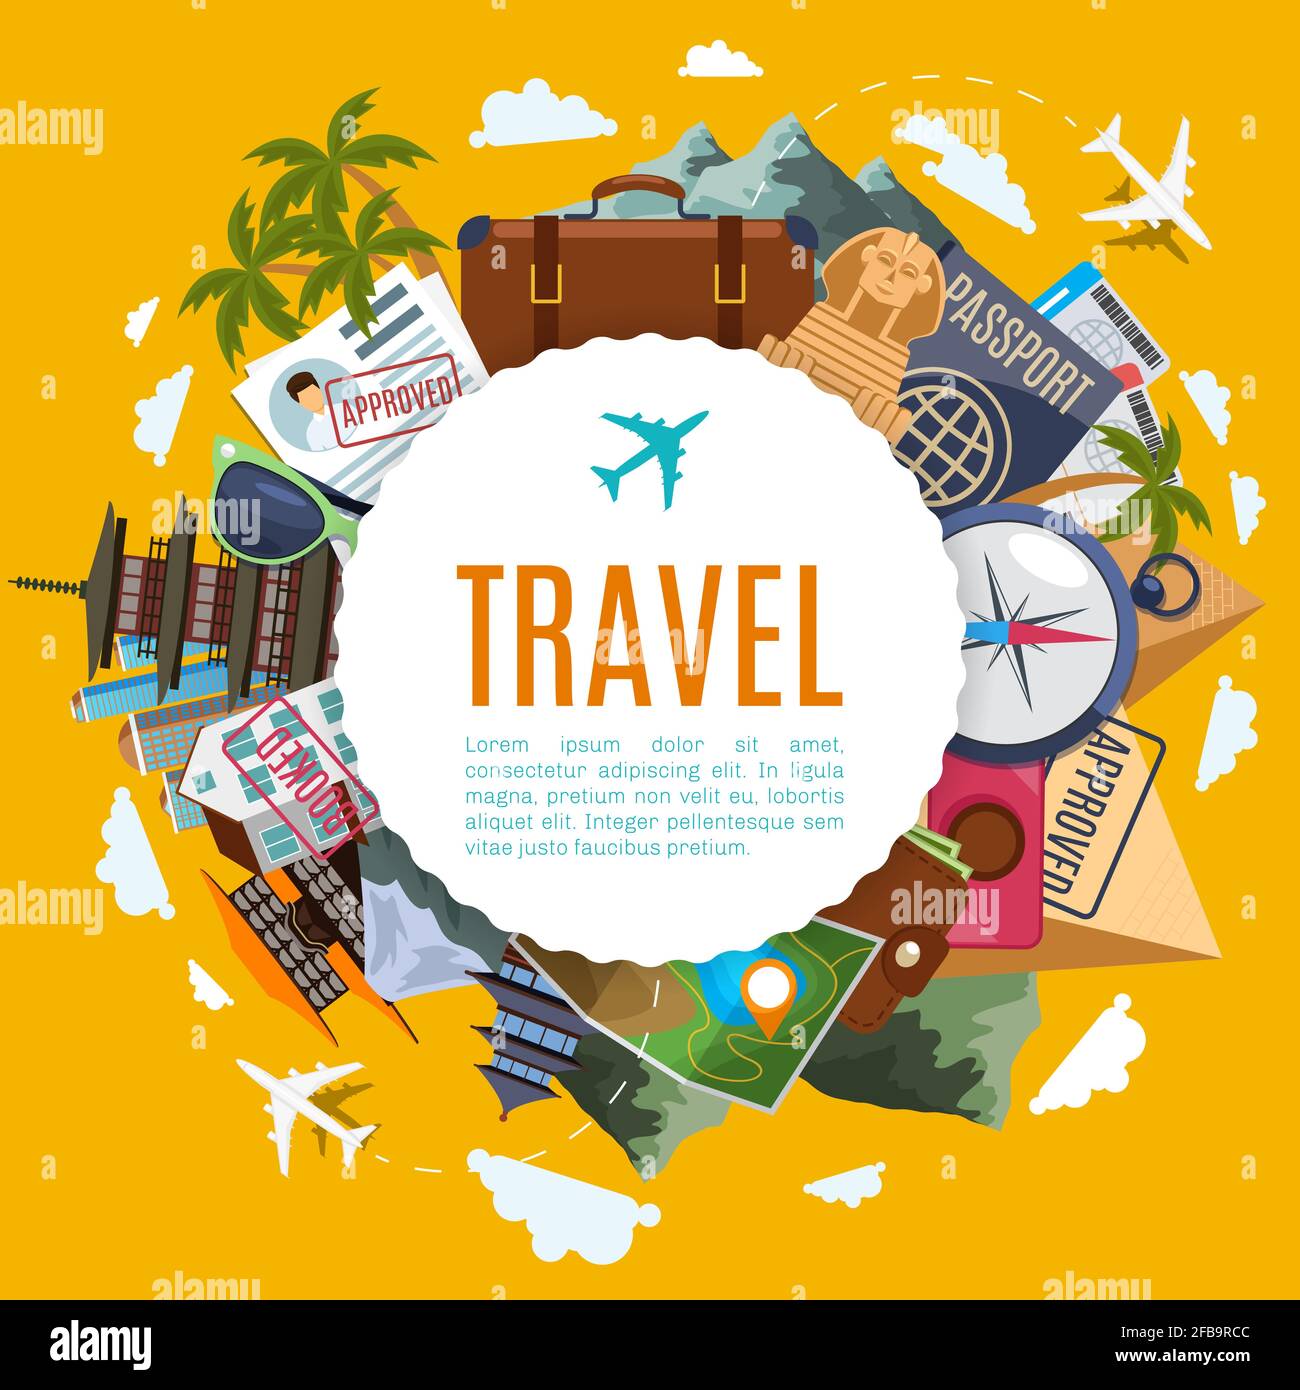 Label de voyage et de tourisme avec attractions sur fond jaune. Égypte et Japon, valise, carte et visa vecteur de vacances concept Illustration de Vecteur